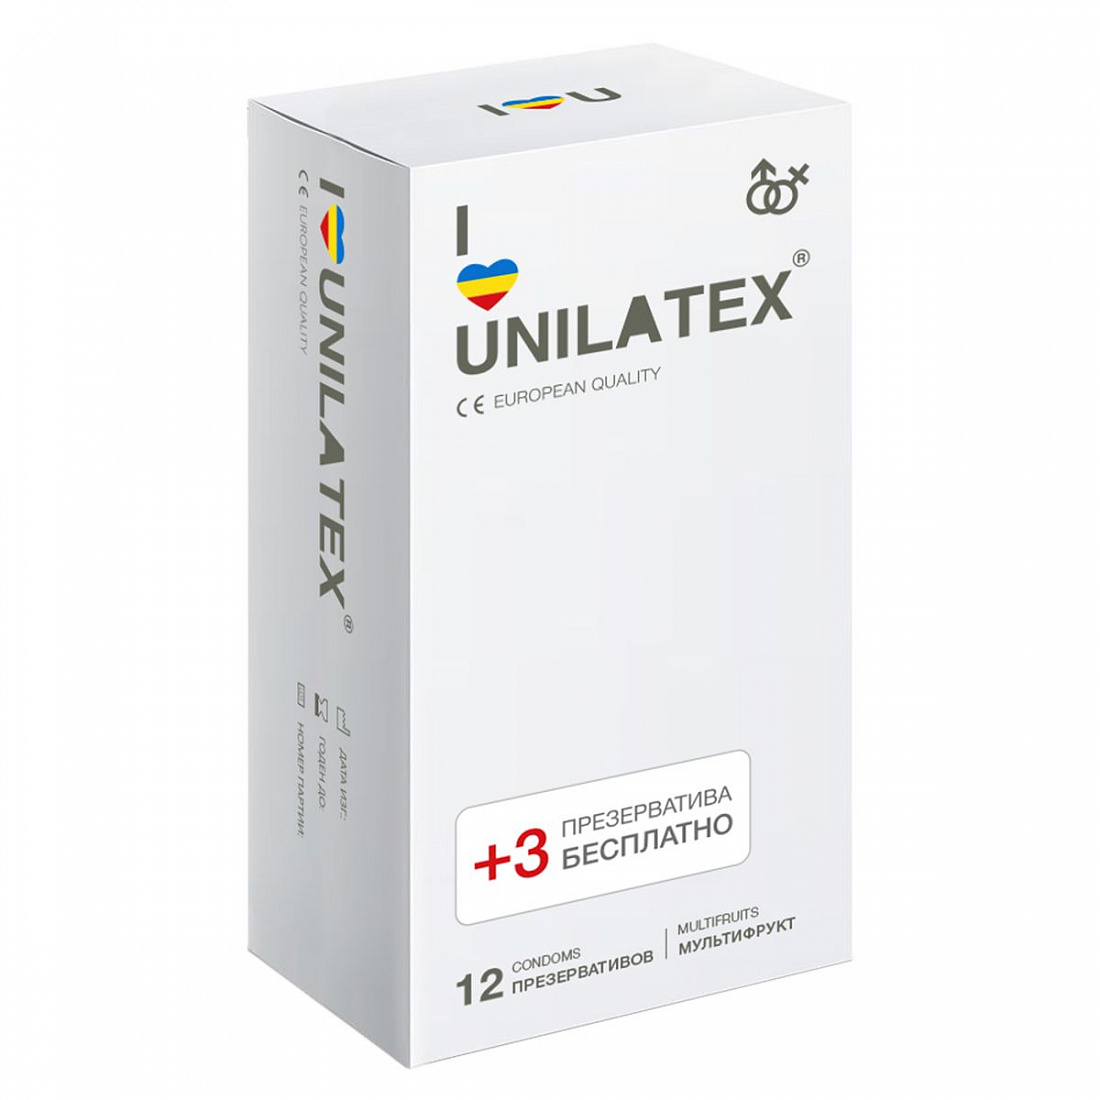 Разноцветные ароматизированные презервативы Unilatex Multifruit  - 12 шт. + 3 шт. в подарок Unilatex Unilatex Multifruits №12 + №3 - цена 